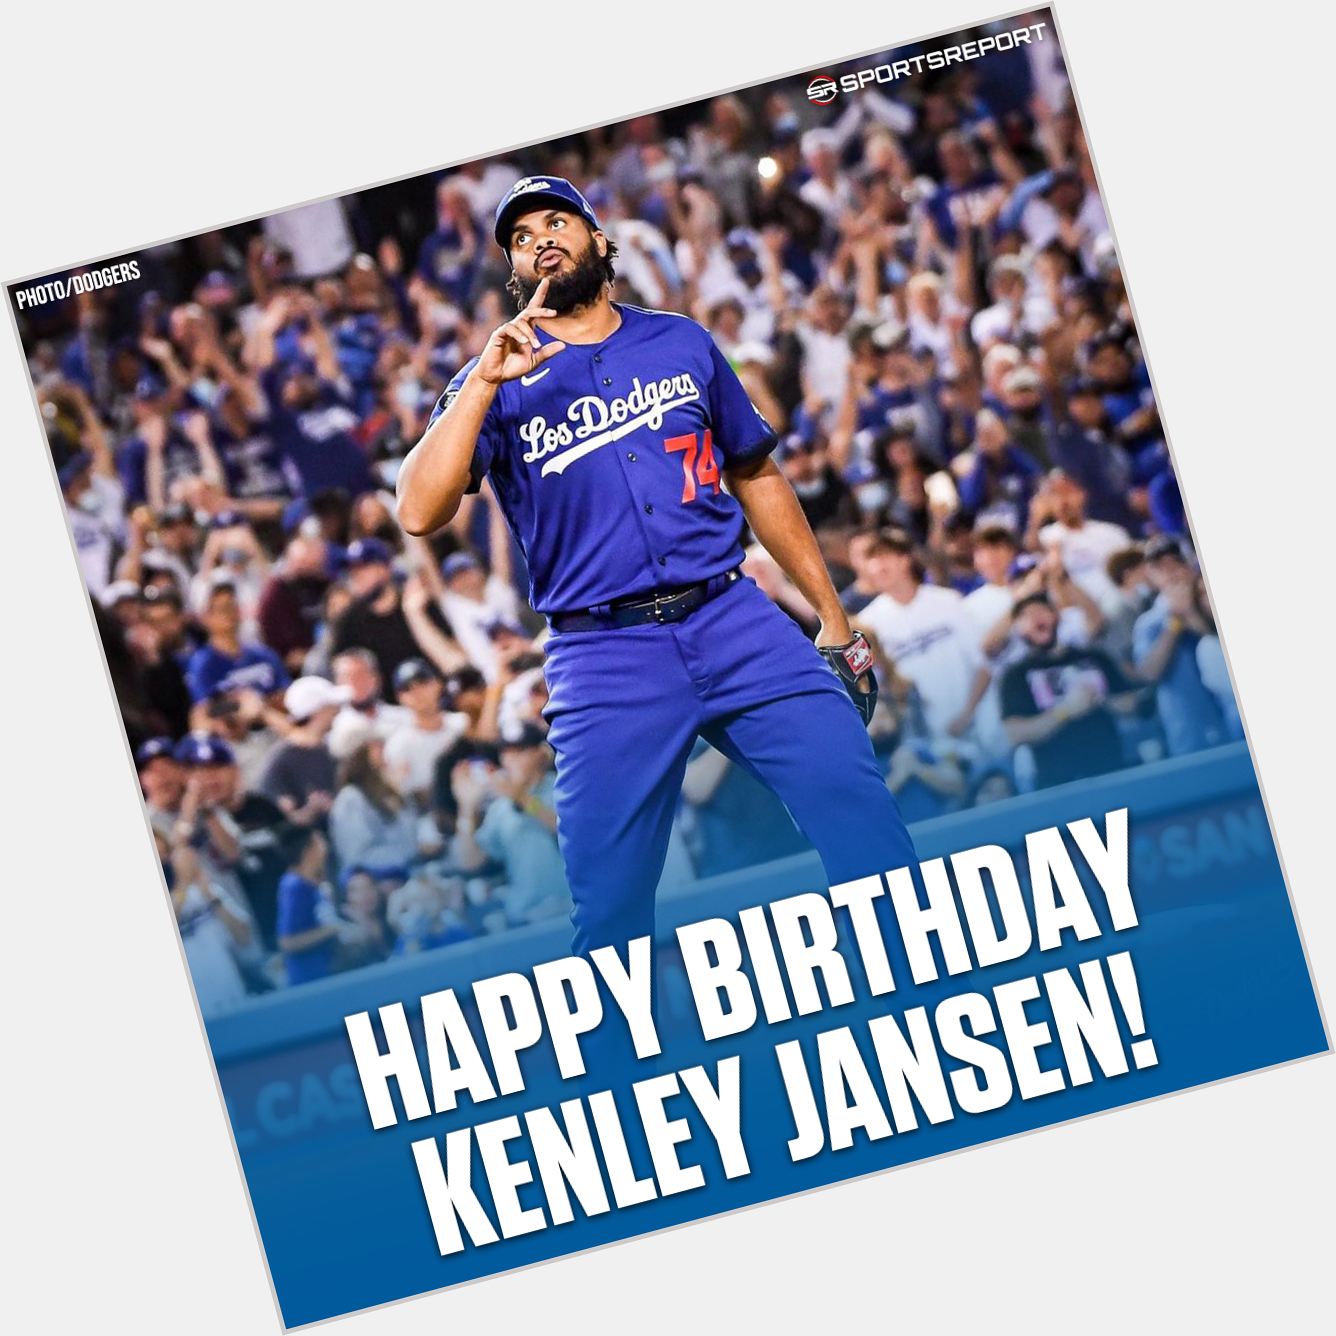  Fans, let\s wish Kenley Jansen a Happy Birthday! 